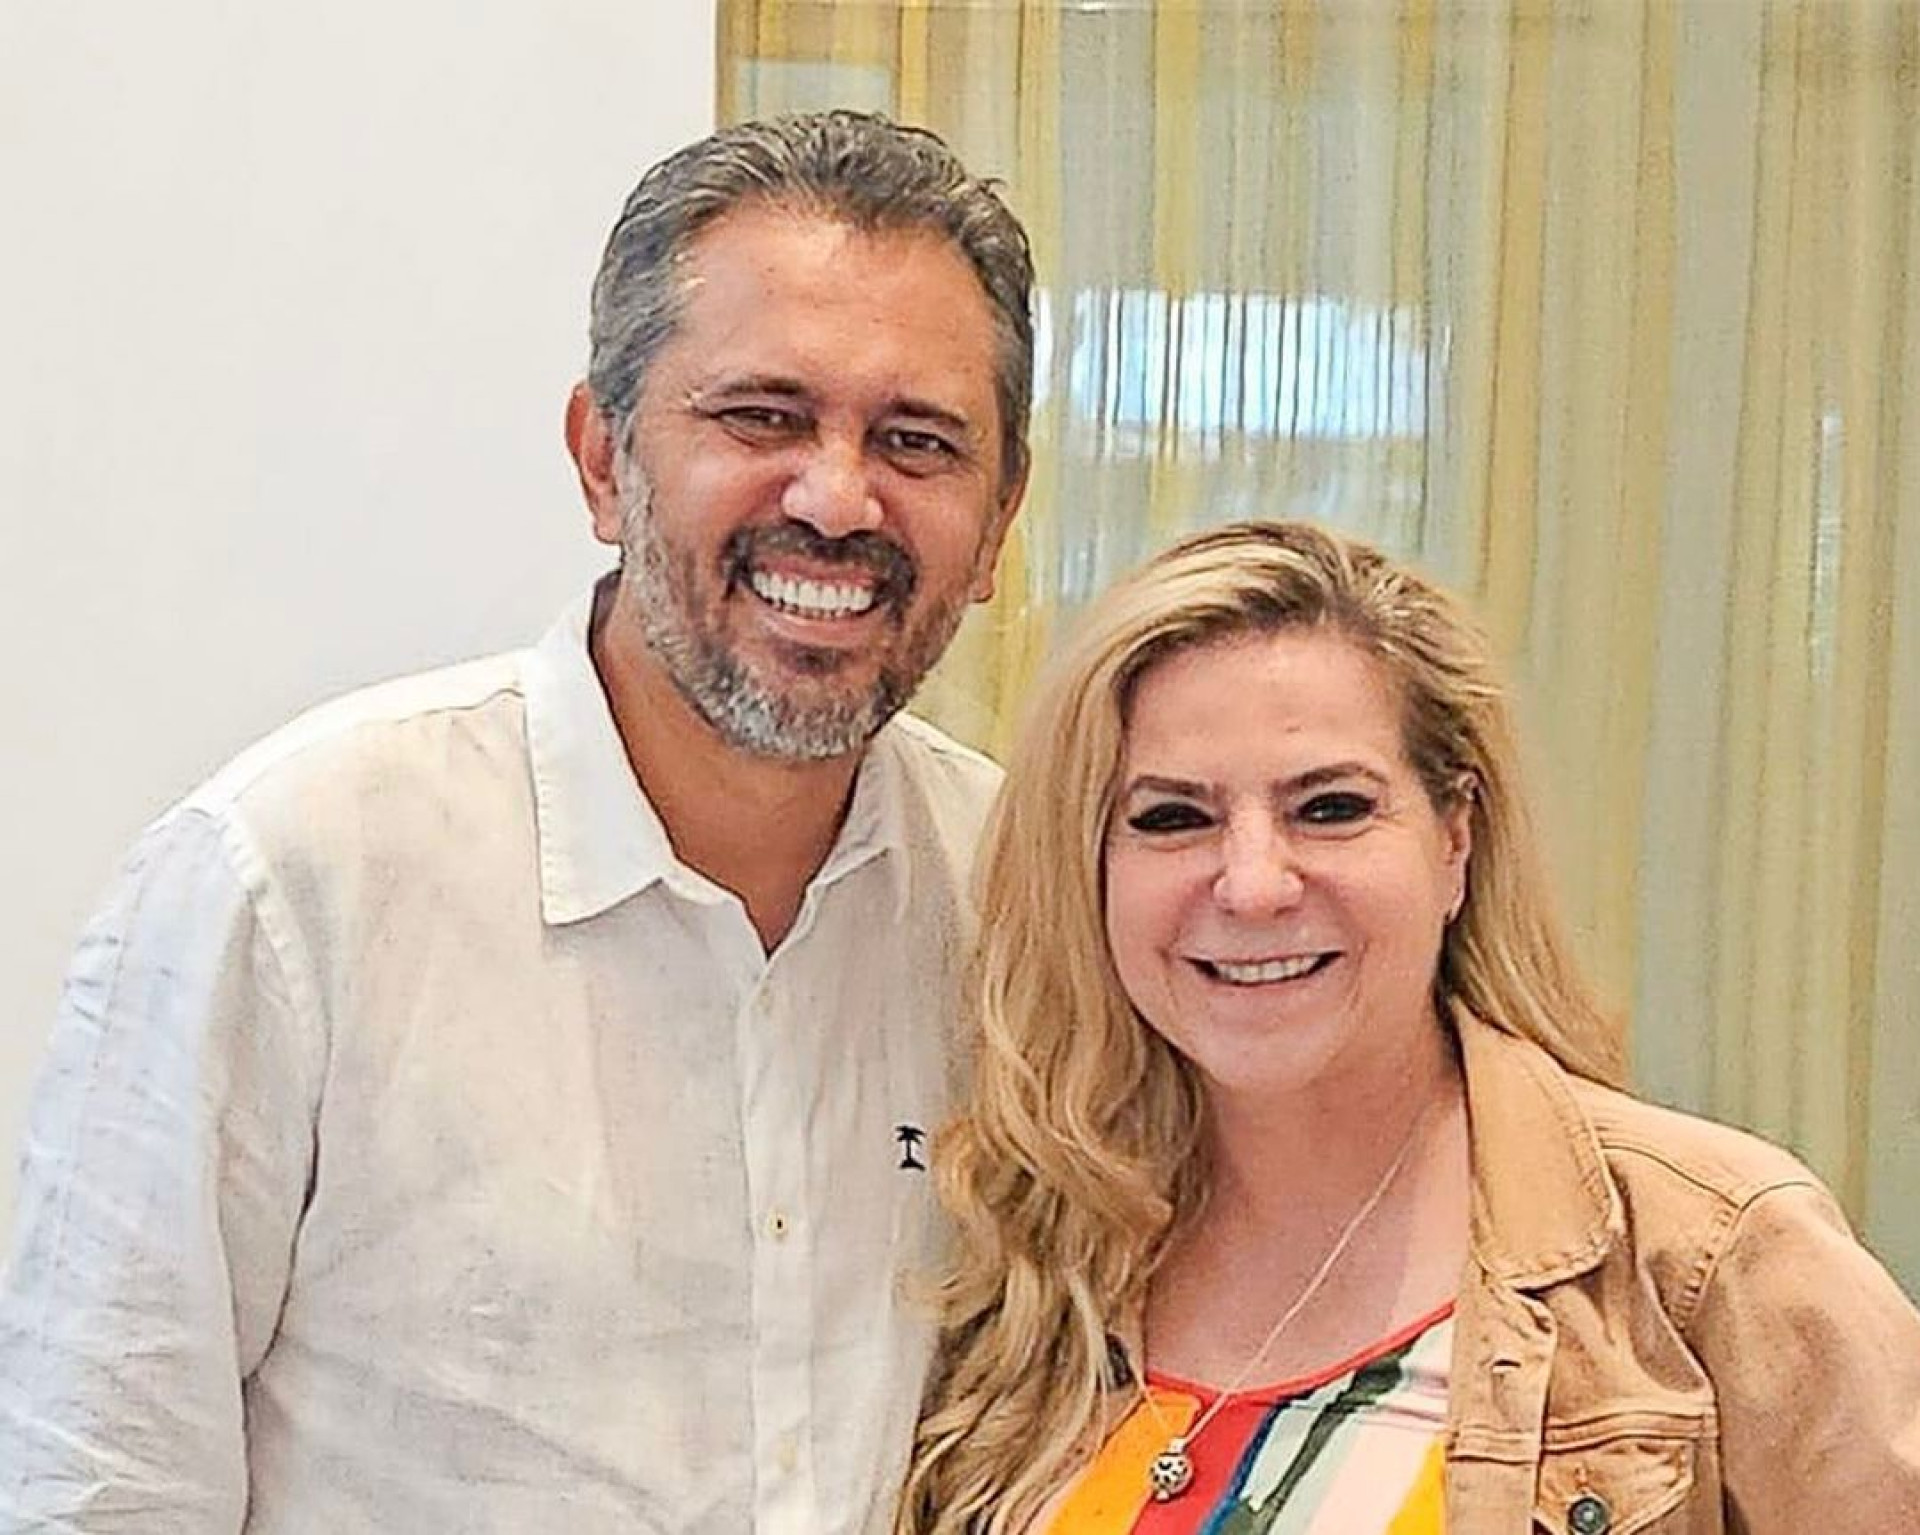 Governador do Ceará, Elmano de Freitas (PT), e deputada federal e ex-prefeita de Fortaleza, Luizianne Lins (PT) (Foto: Reprodução/Instagram @luiziannelinspt)